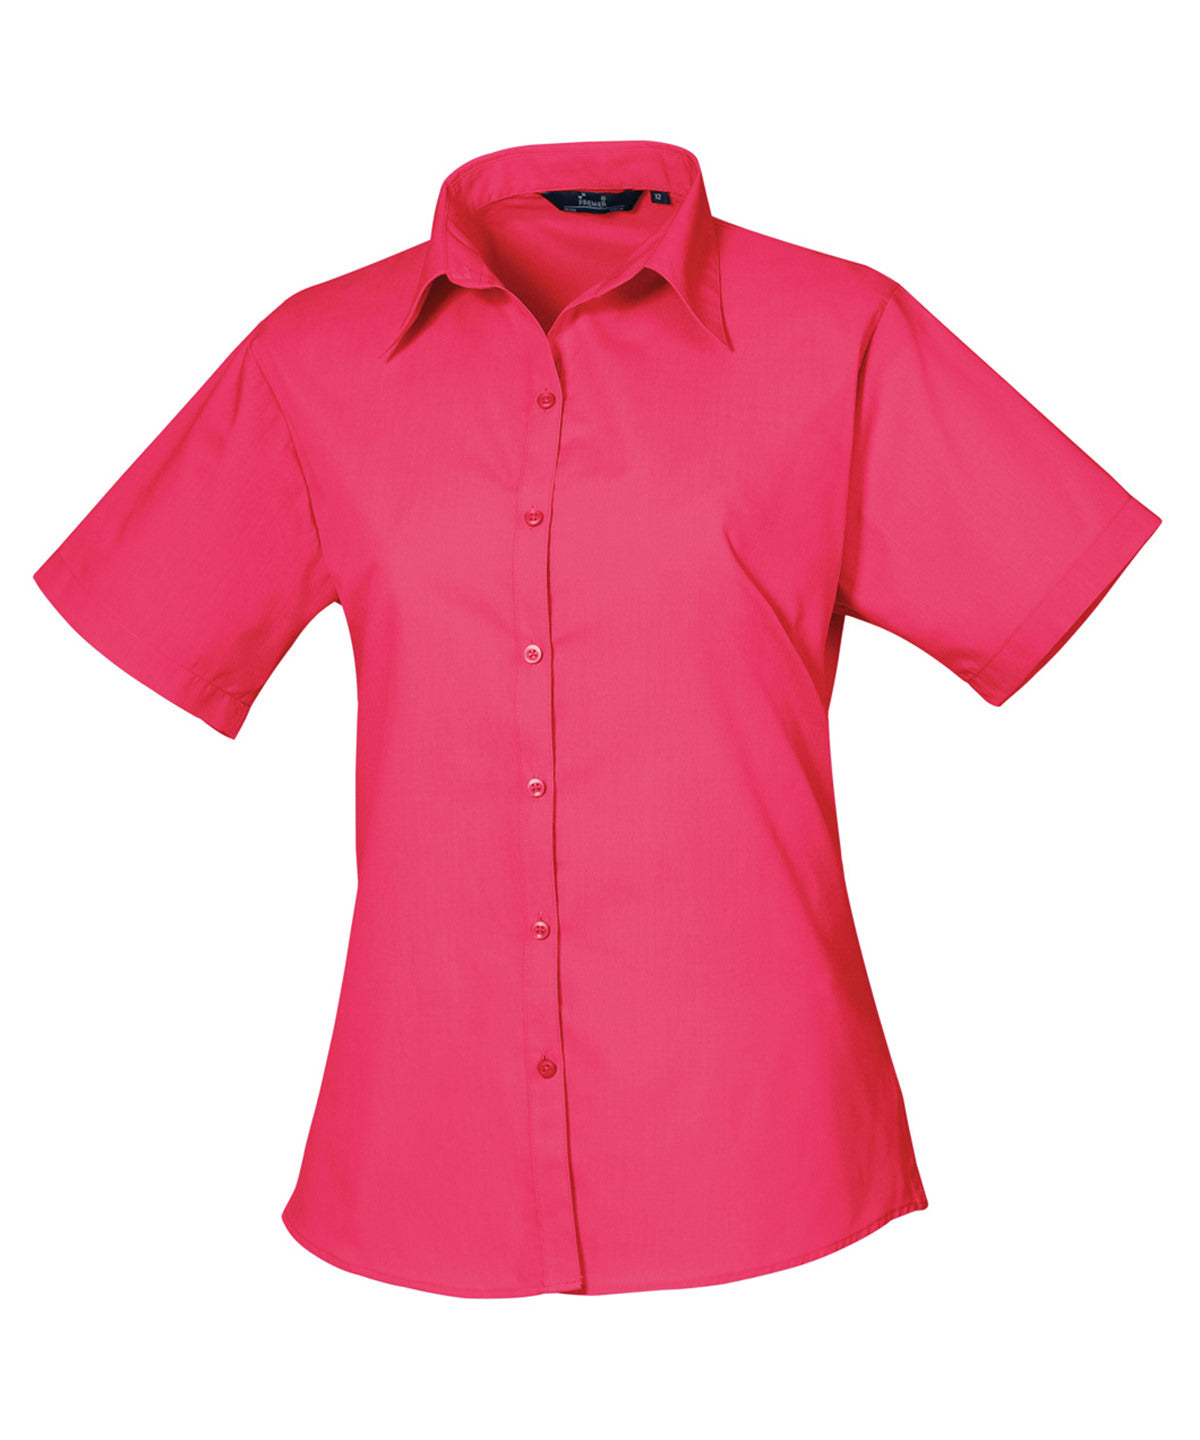 Premier Women's short sleeve poplin blouse Hot Pink